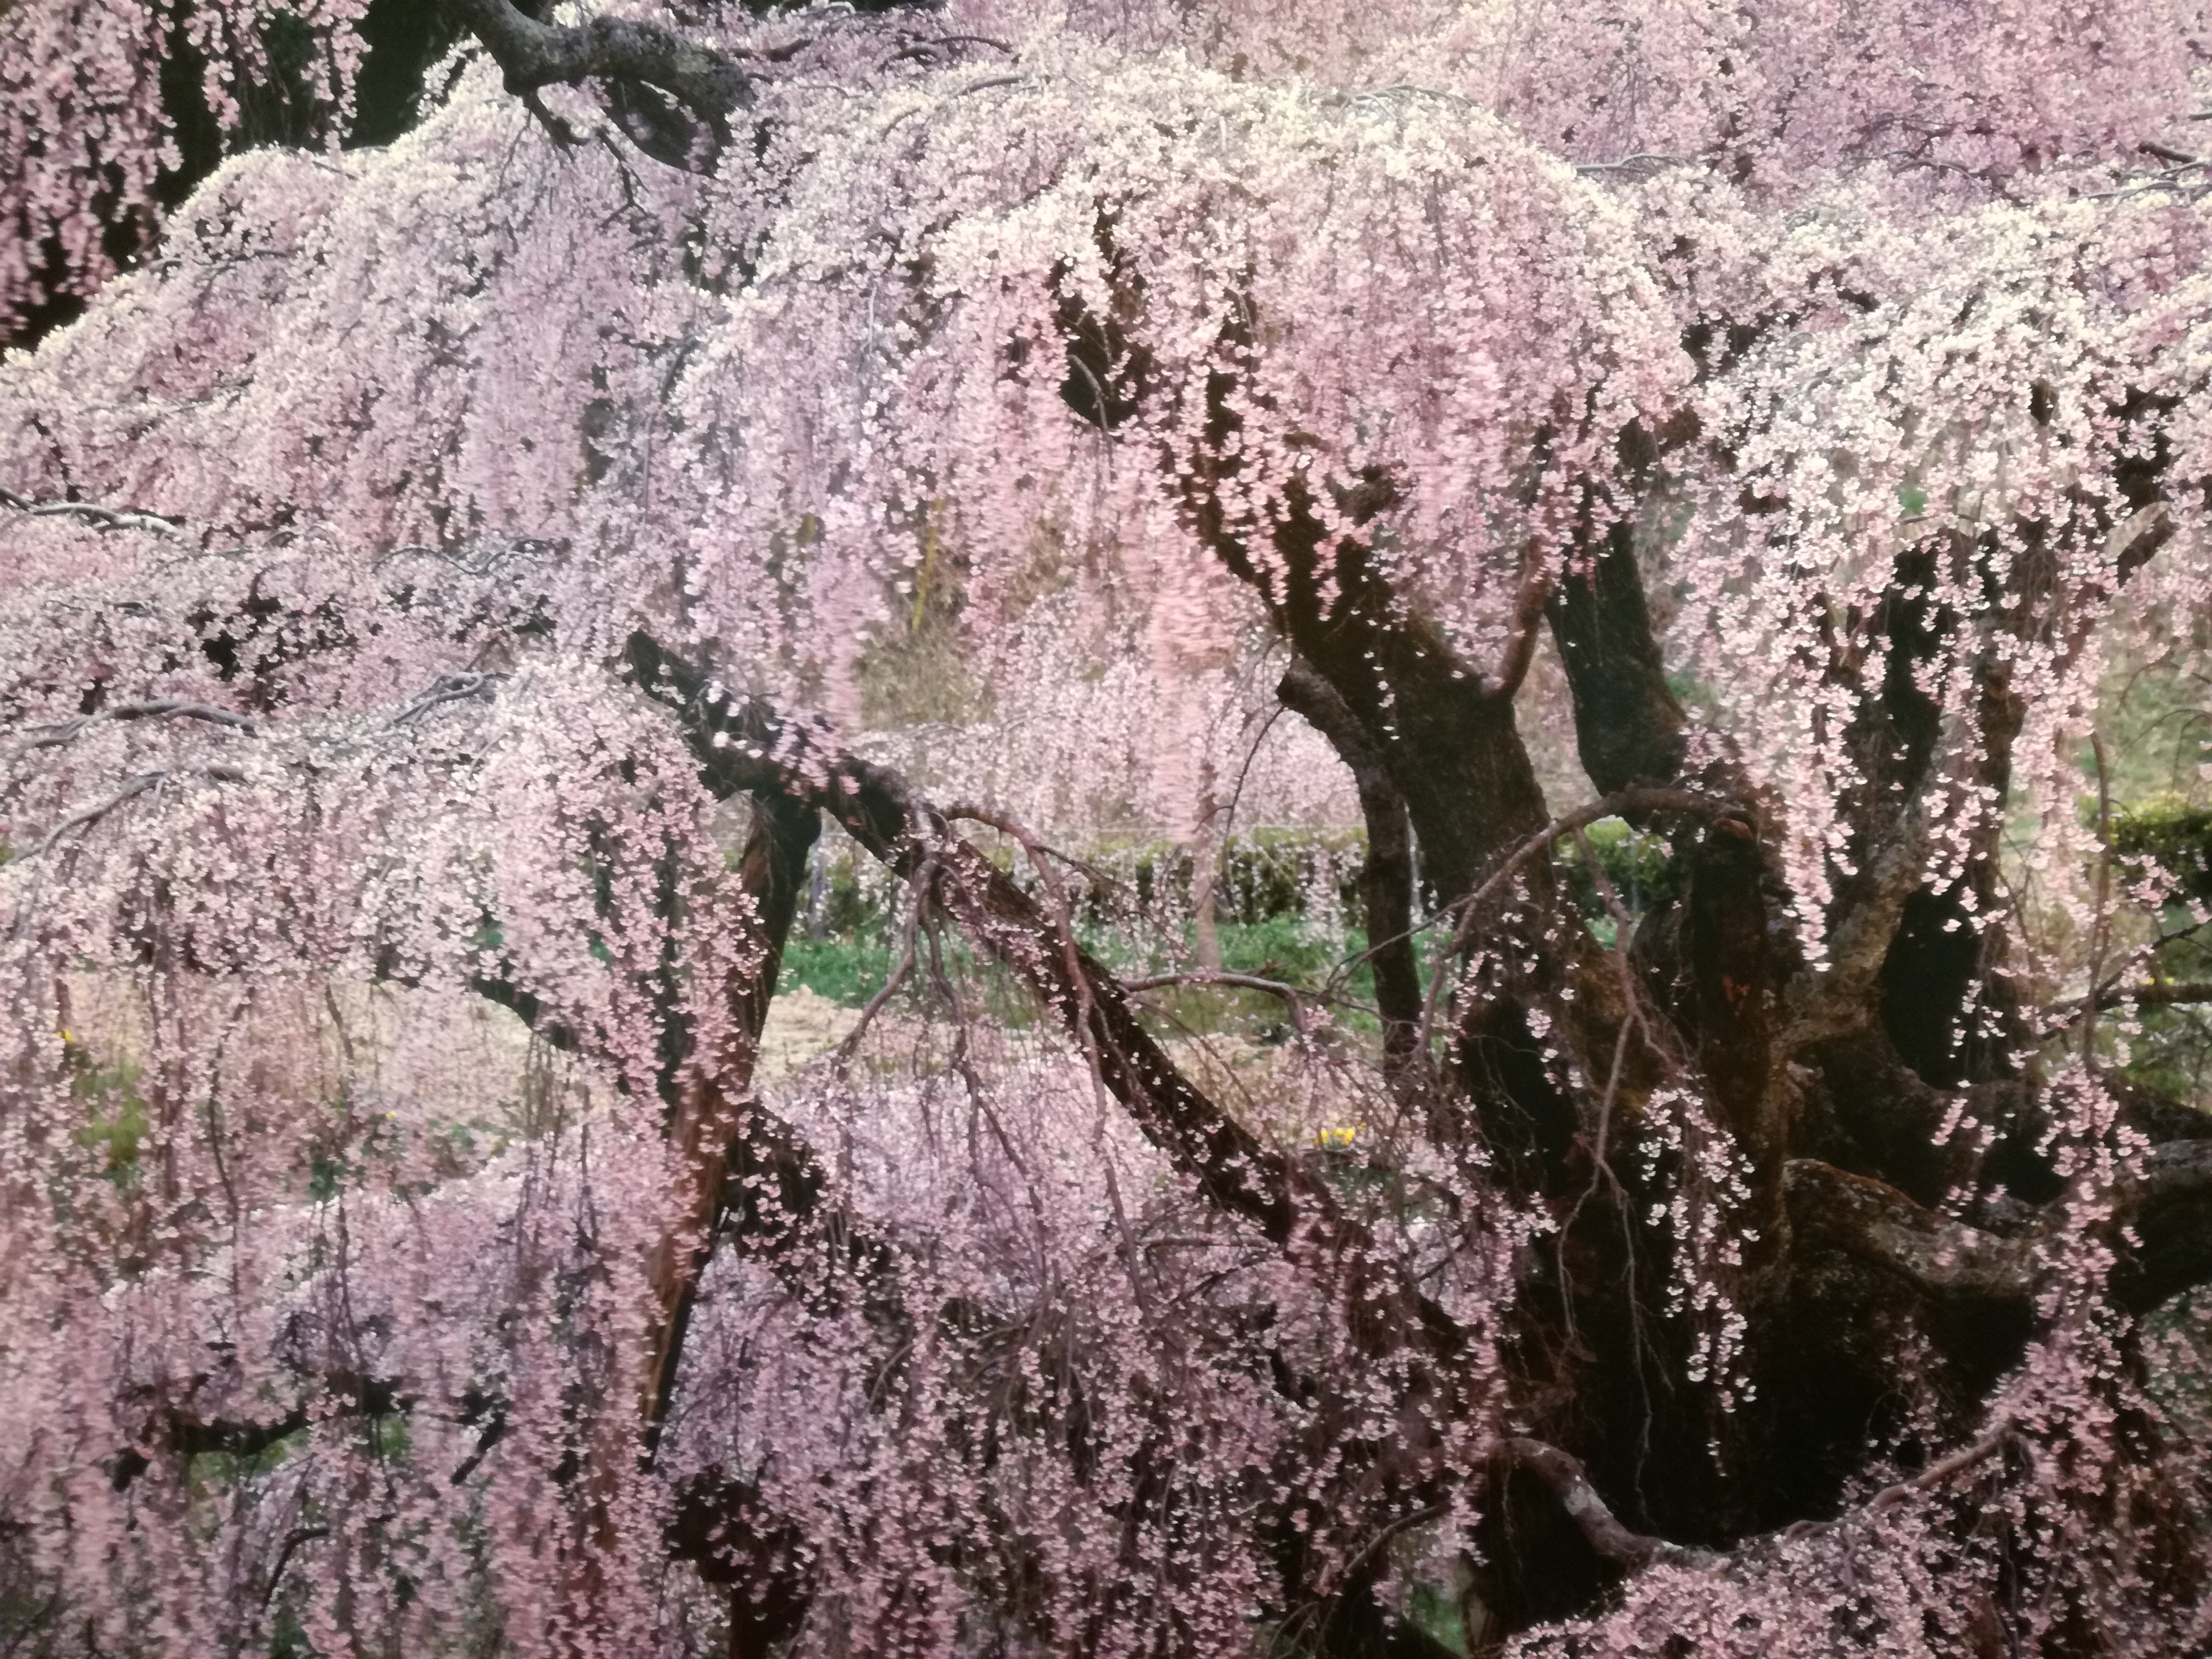 フジフイルムスクェア・竹内敏信写真展｢日本の桜｣: 木綿屋喜三郎 写真と俳句・時の記憶と食べ歩き